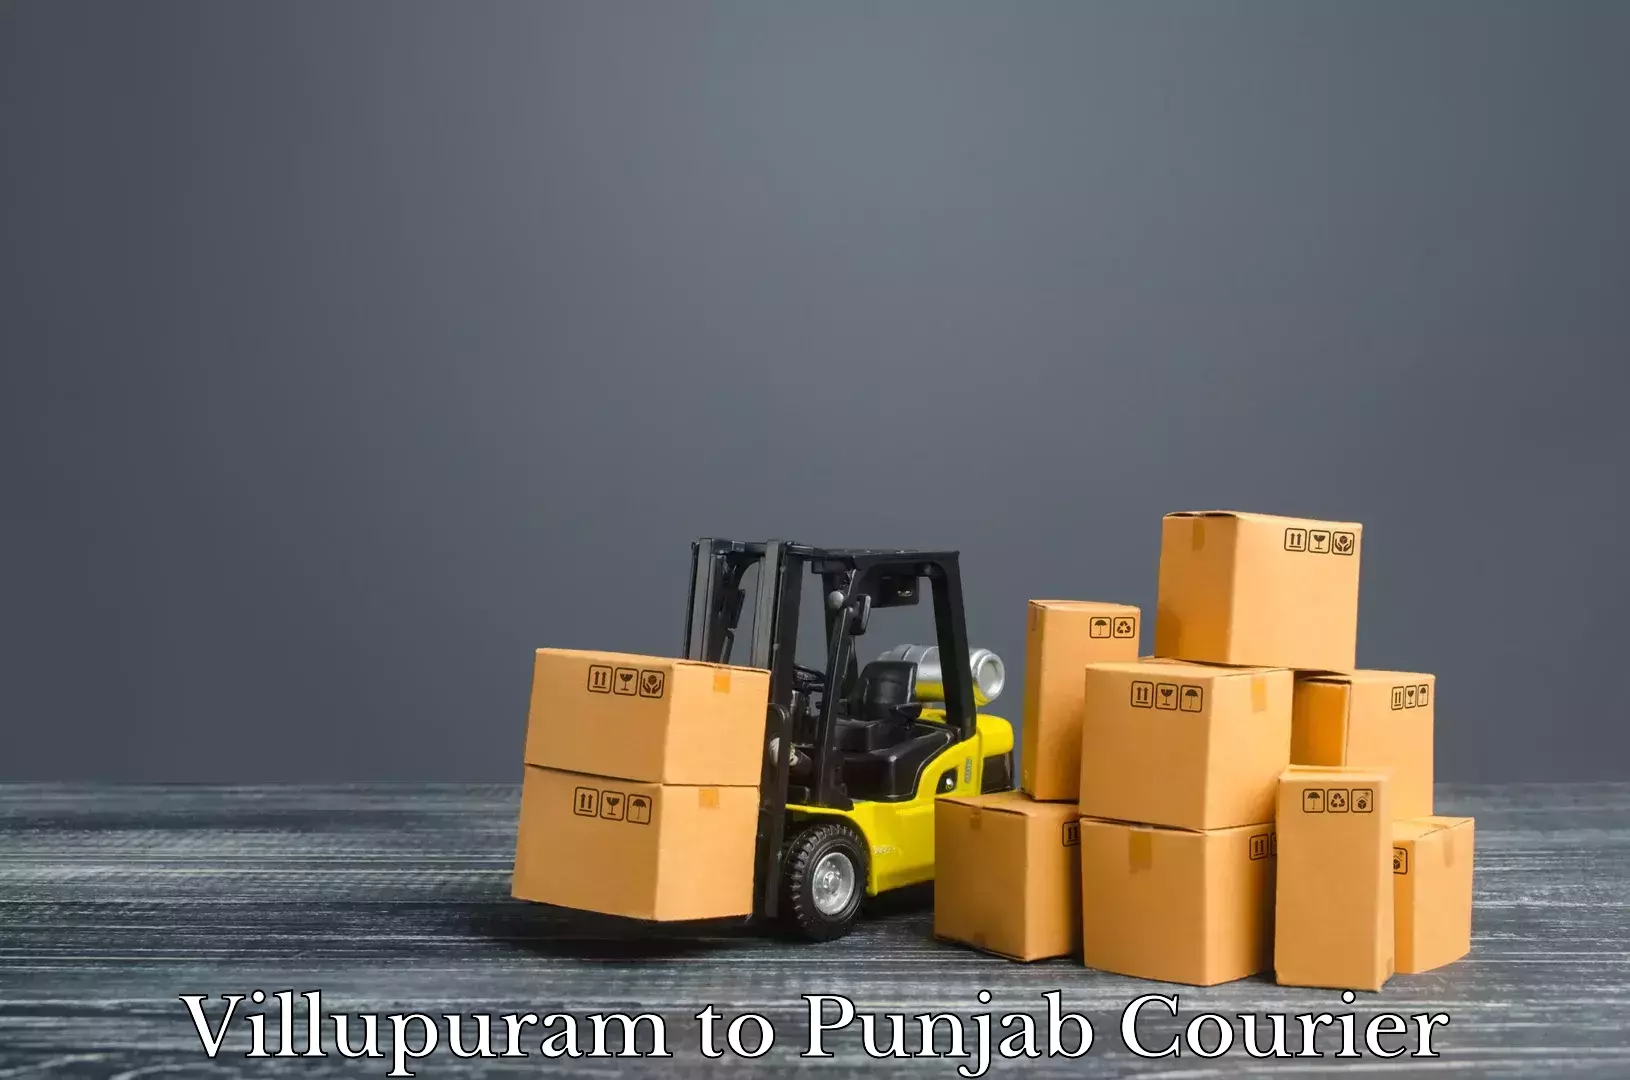 Luggage transport consultancy Villupuram to Faridkot